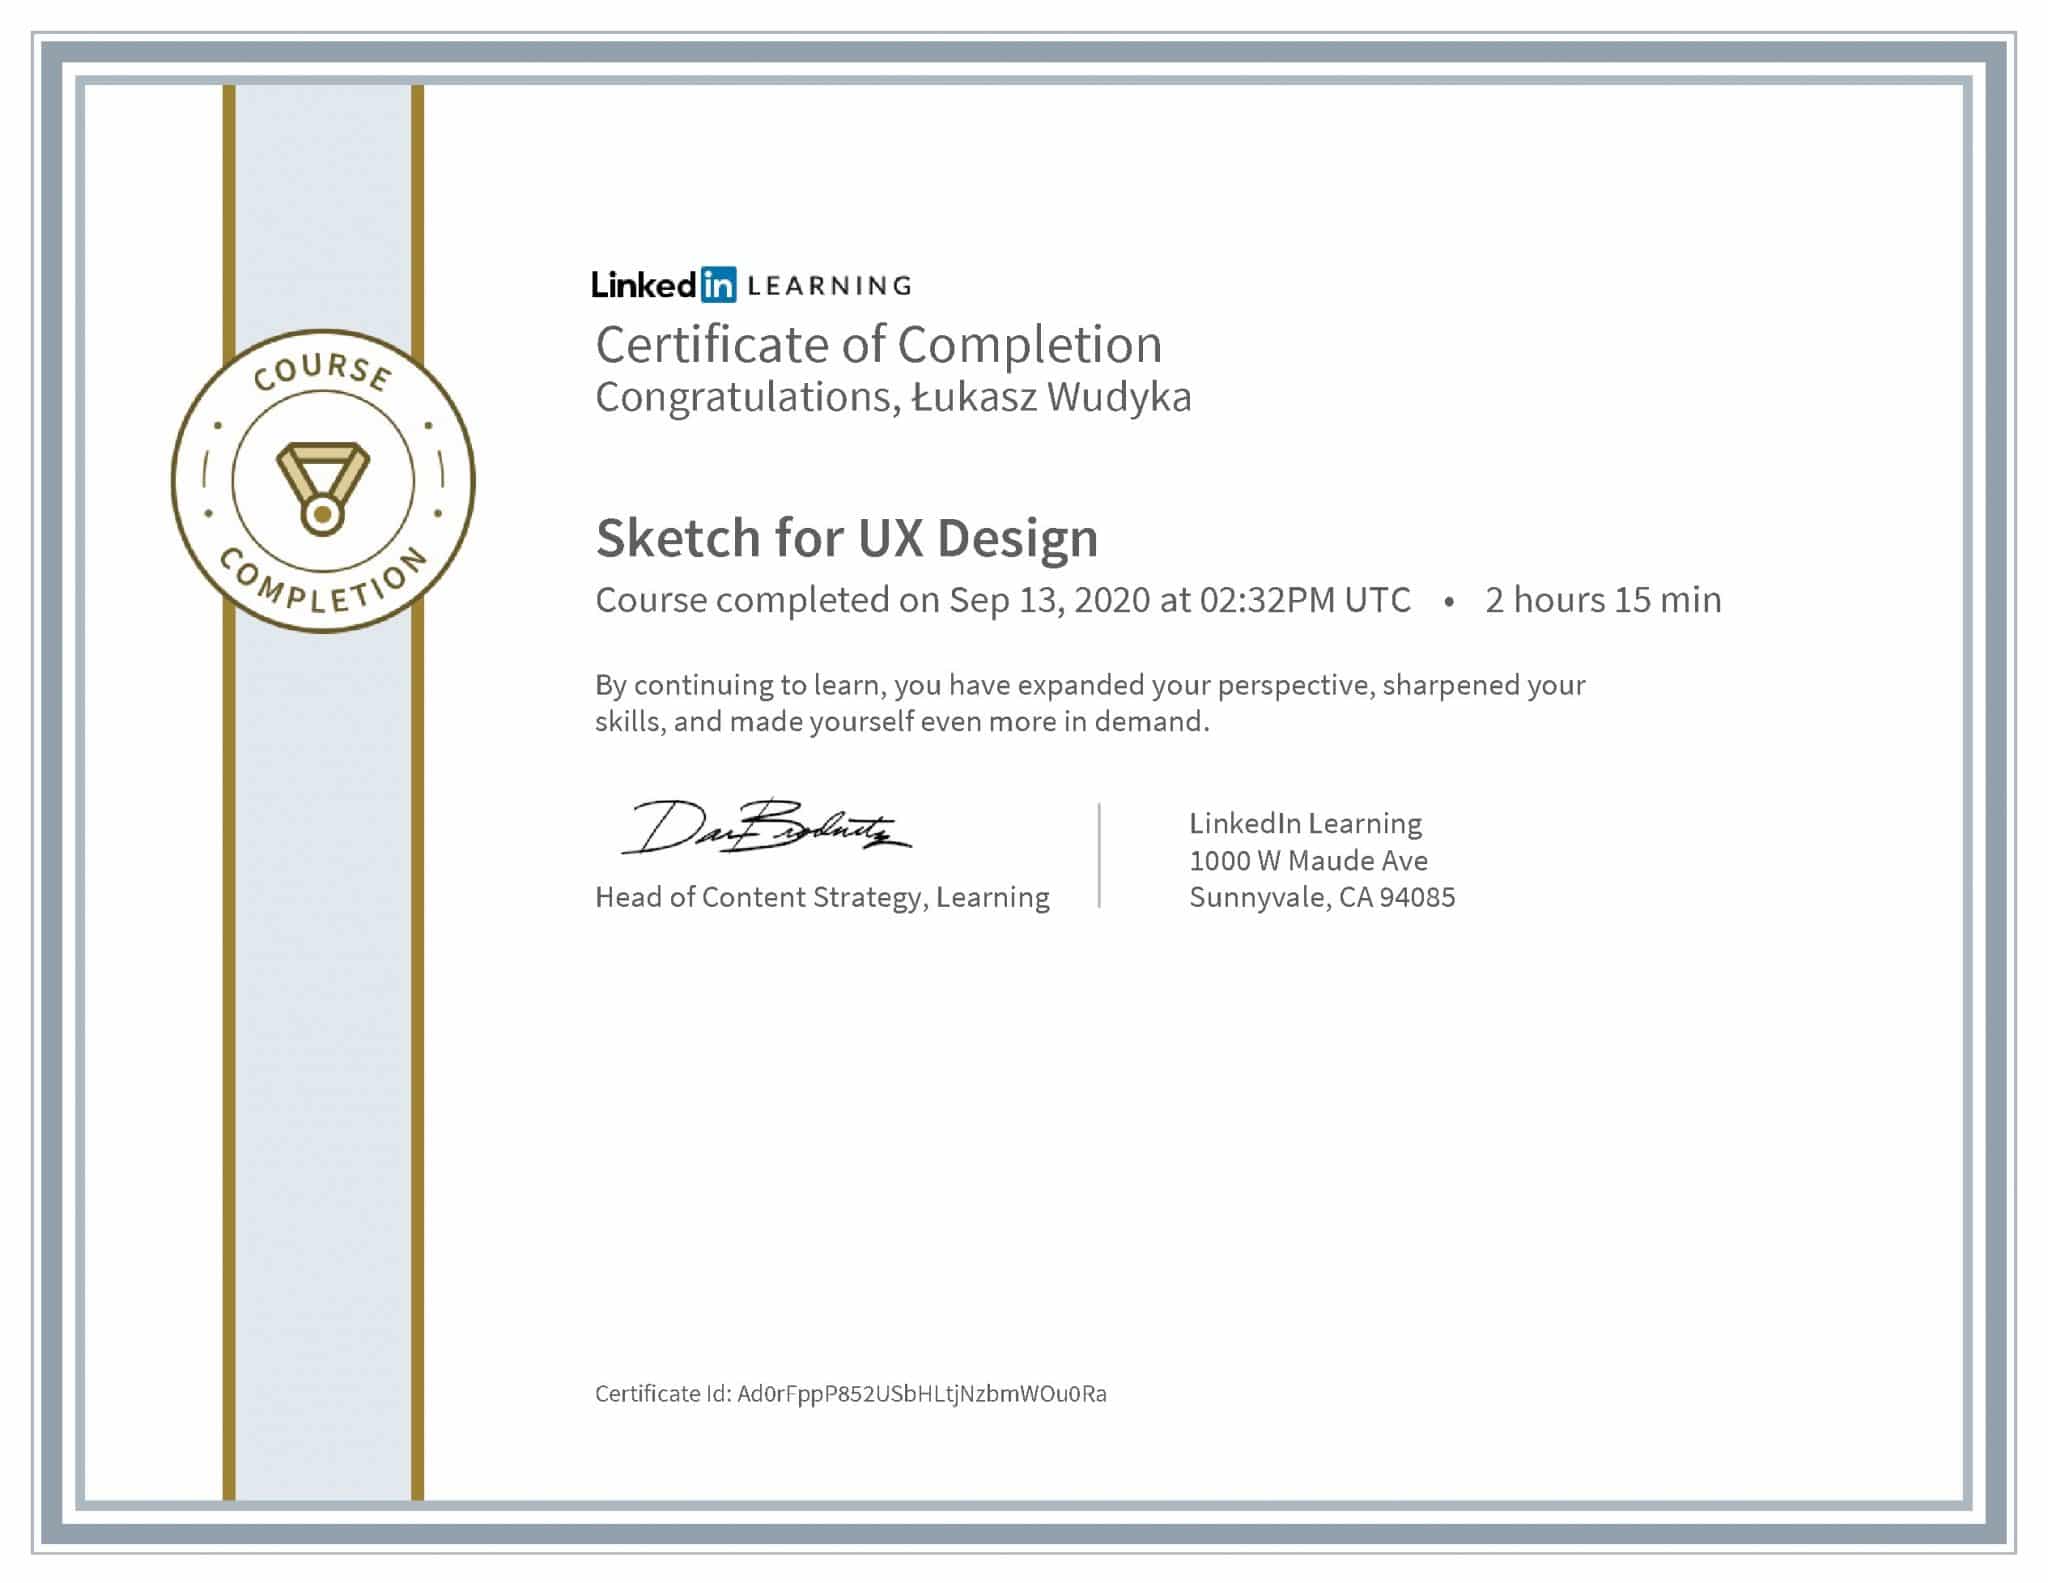 Łukasz Wudyka certyfikat LinkedIn Sketch for UX Design